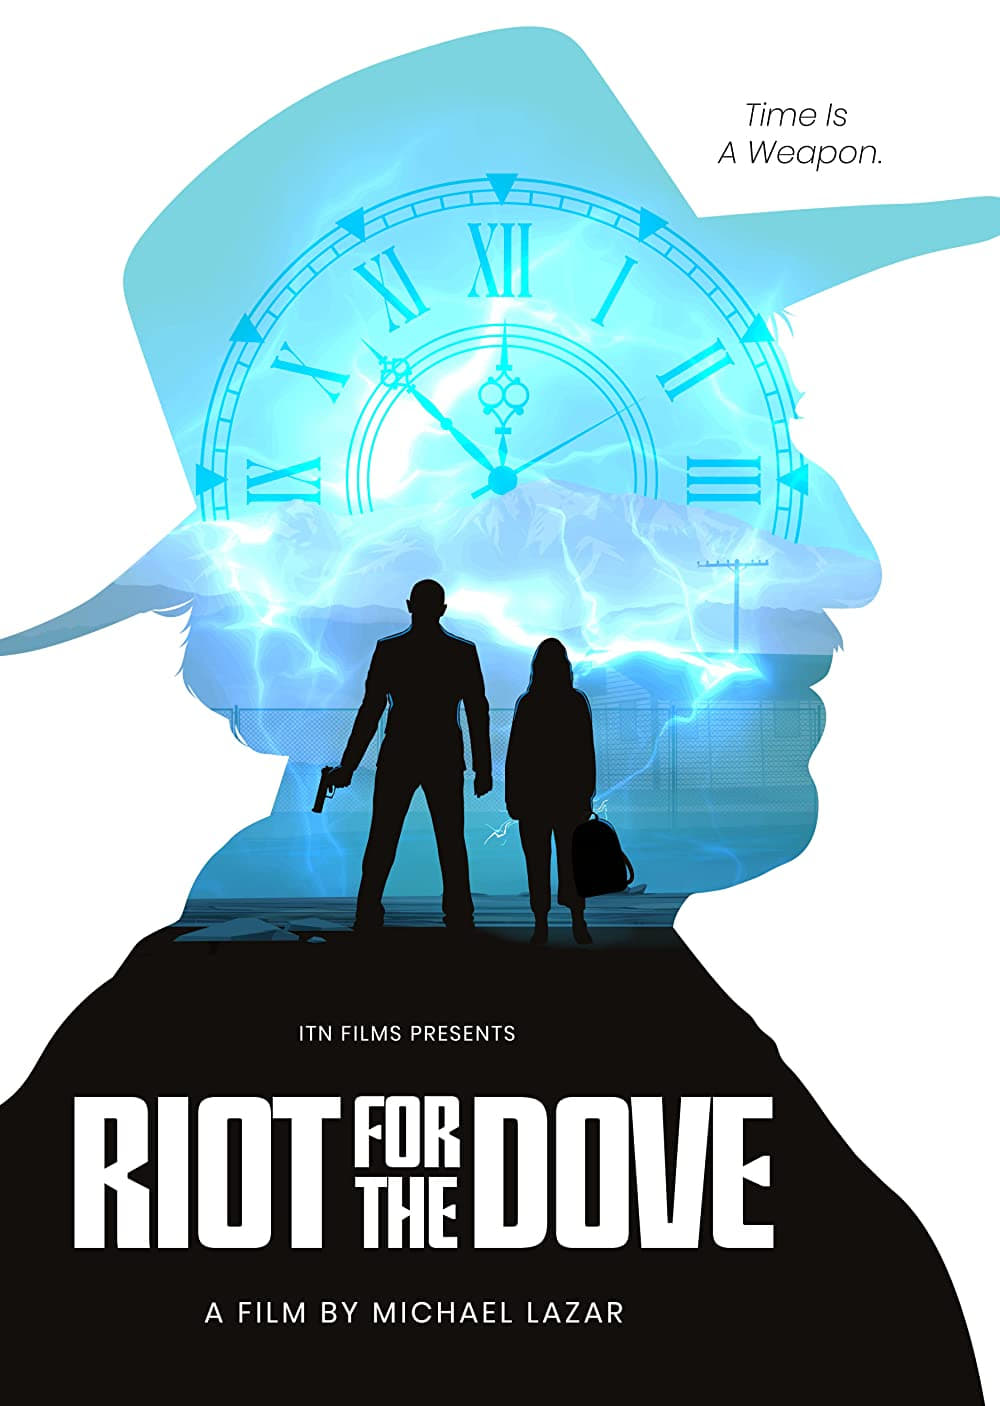 Riot for the dove (2022) poster - Allmovieland.com